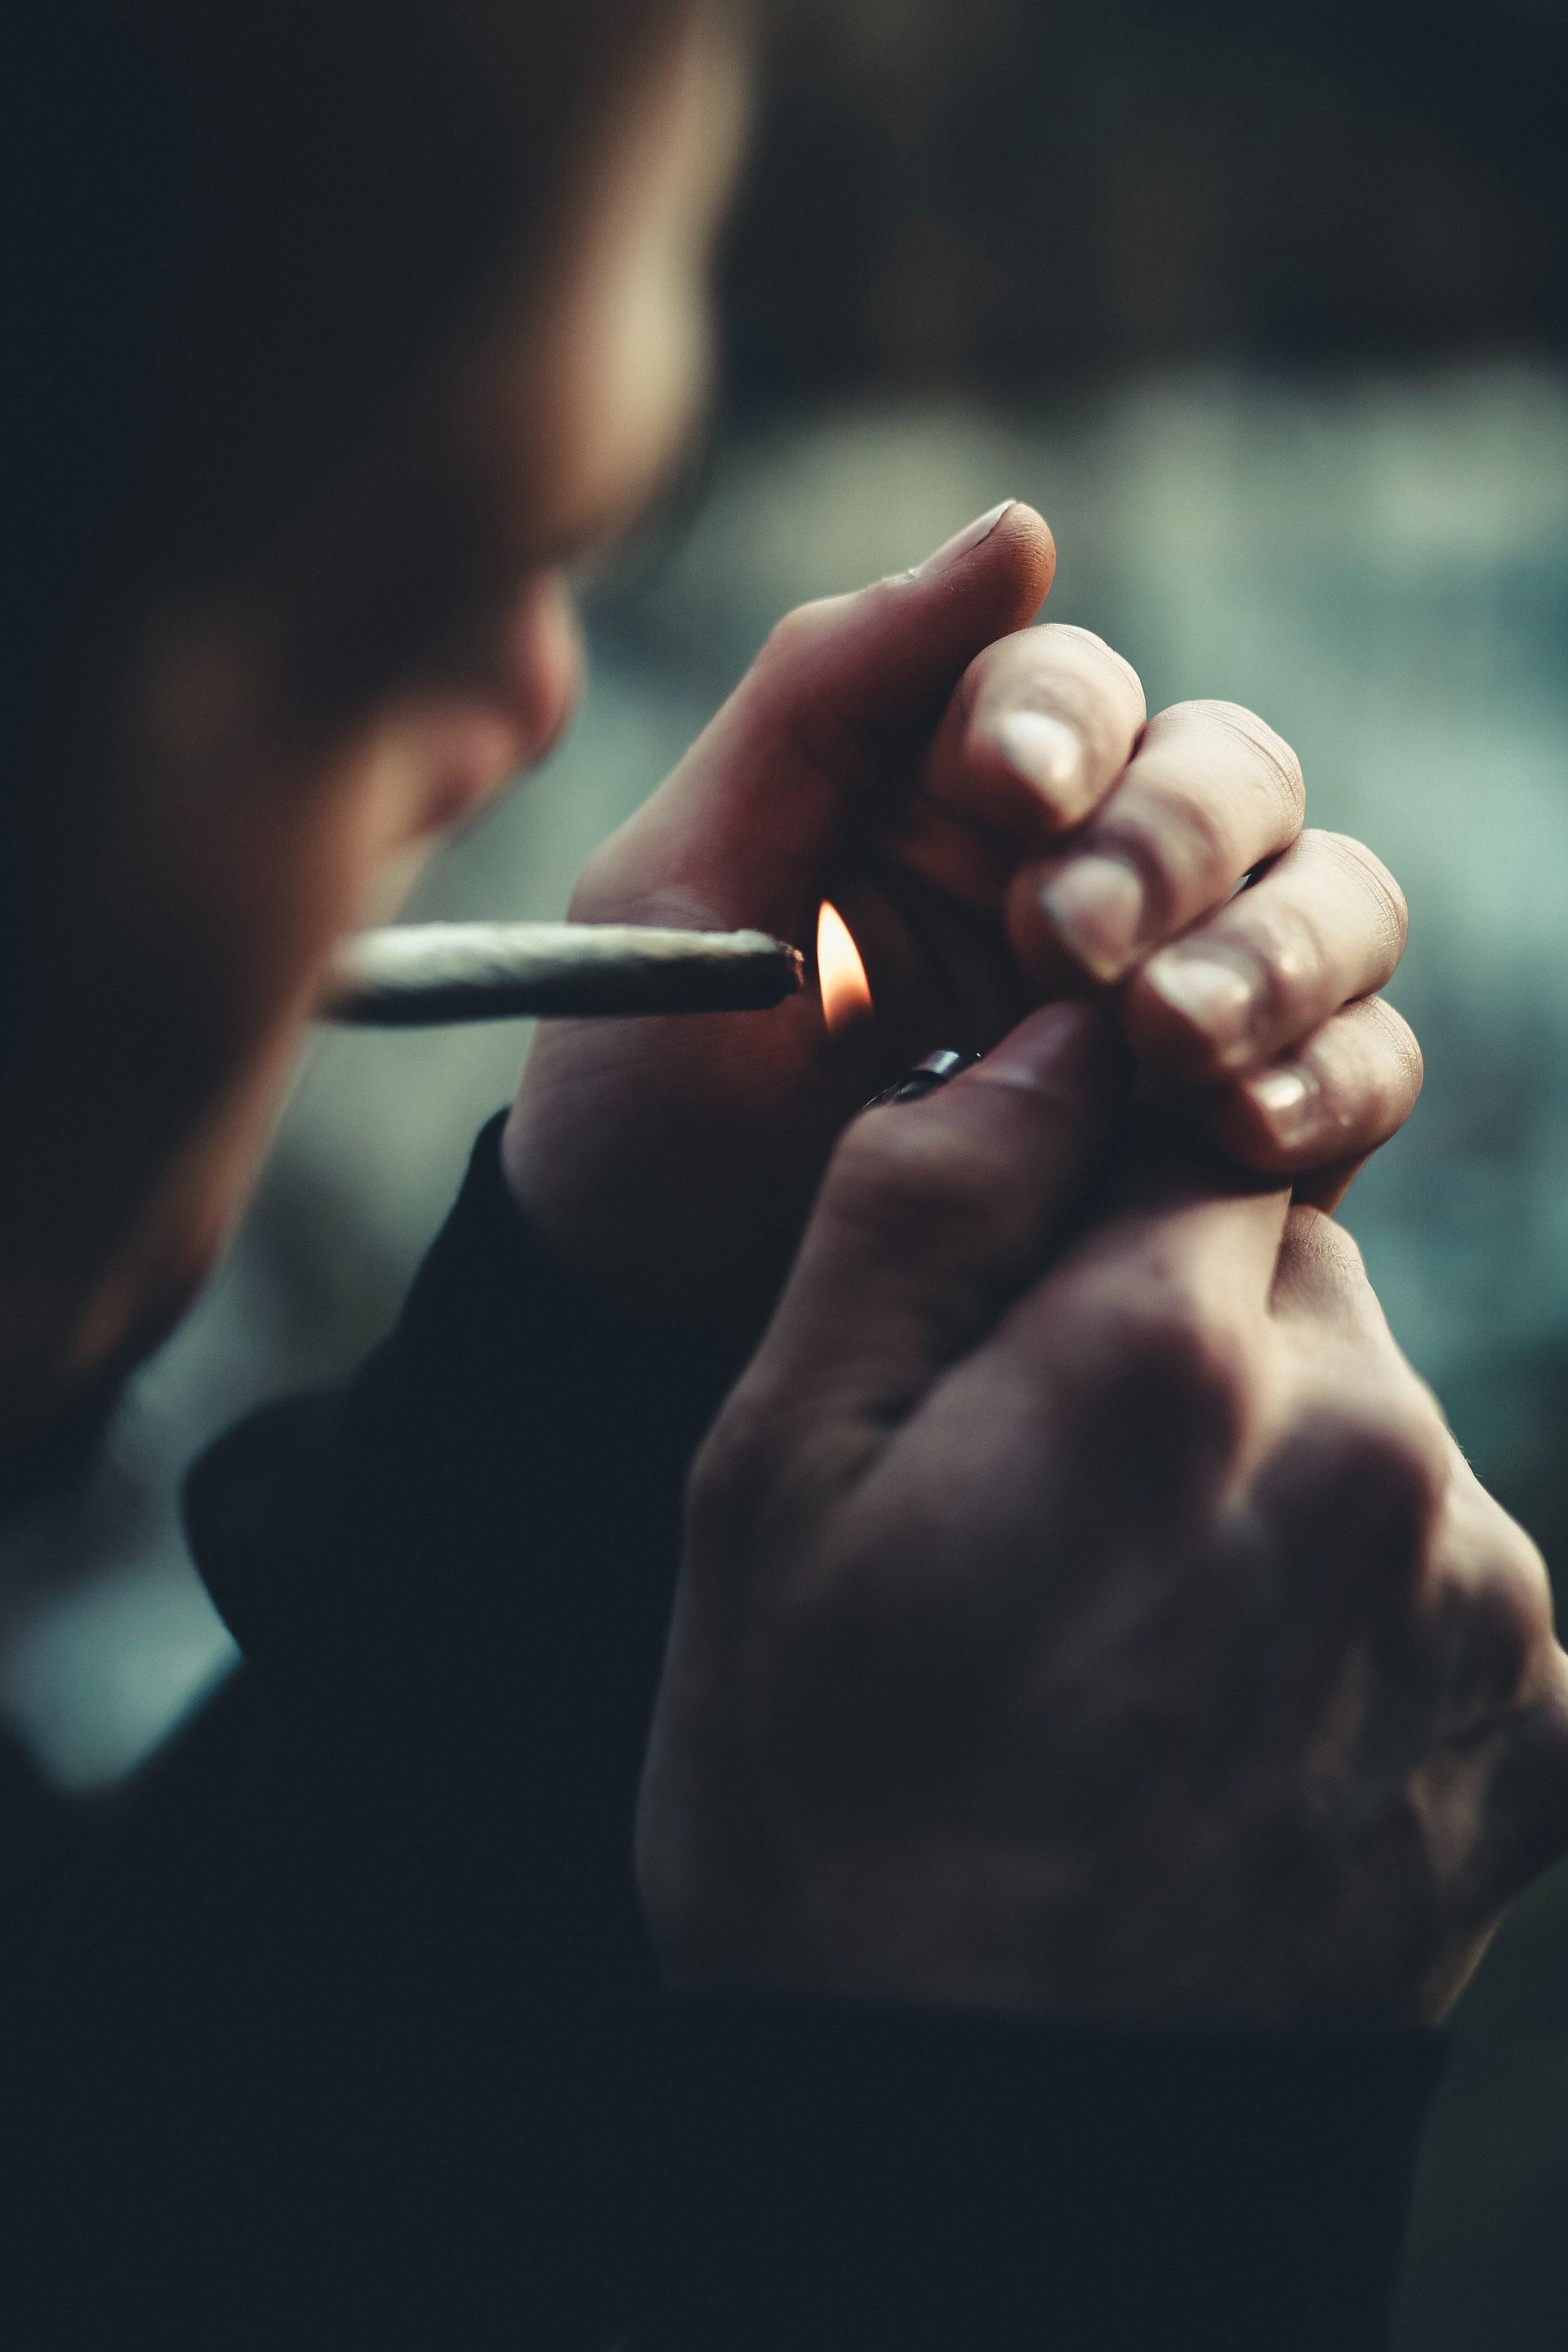 Studiu: Fumătorii de canabis au un risc mai mare de emfizem pulmonar